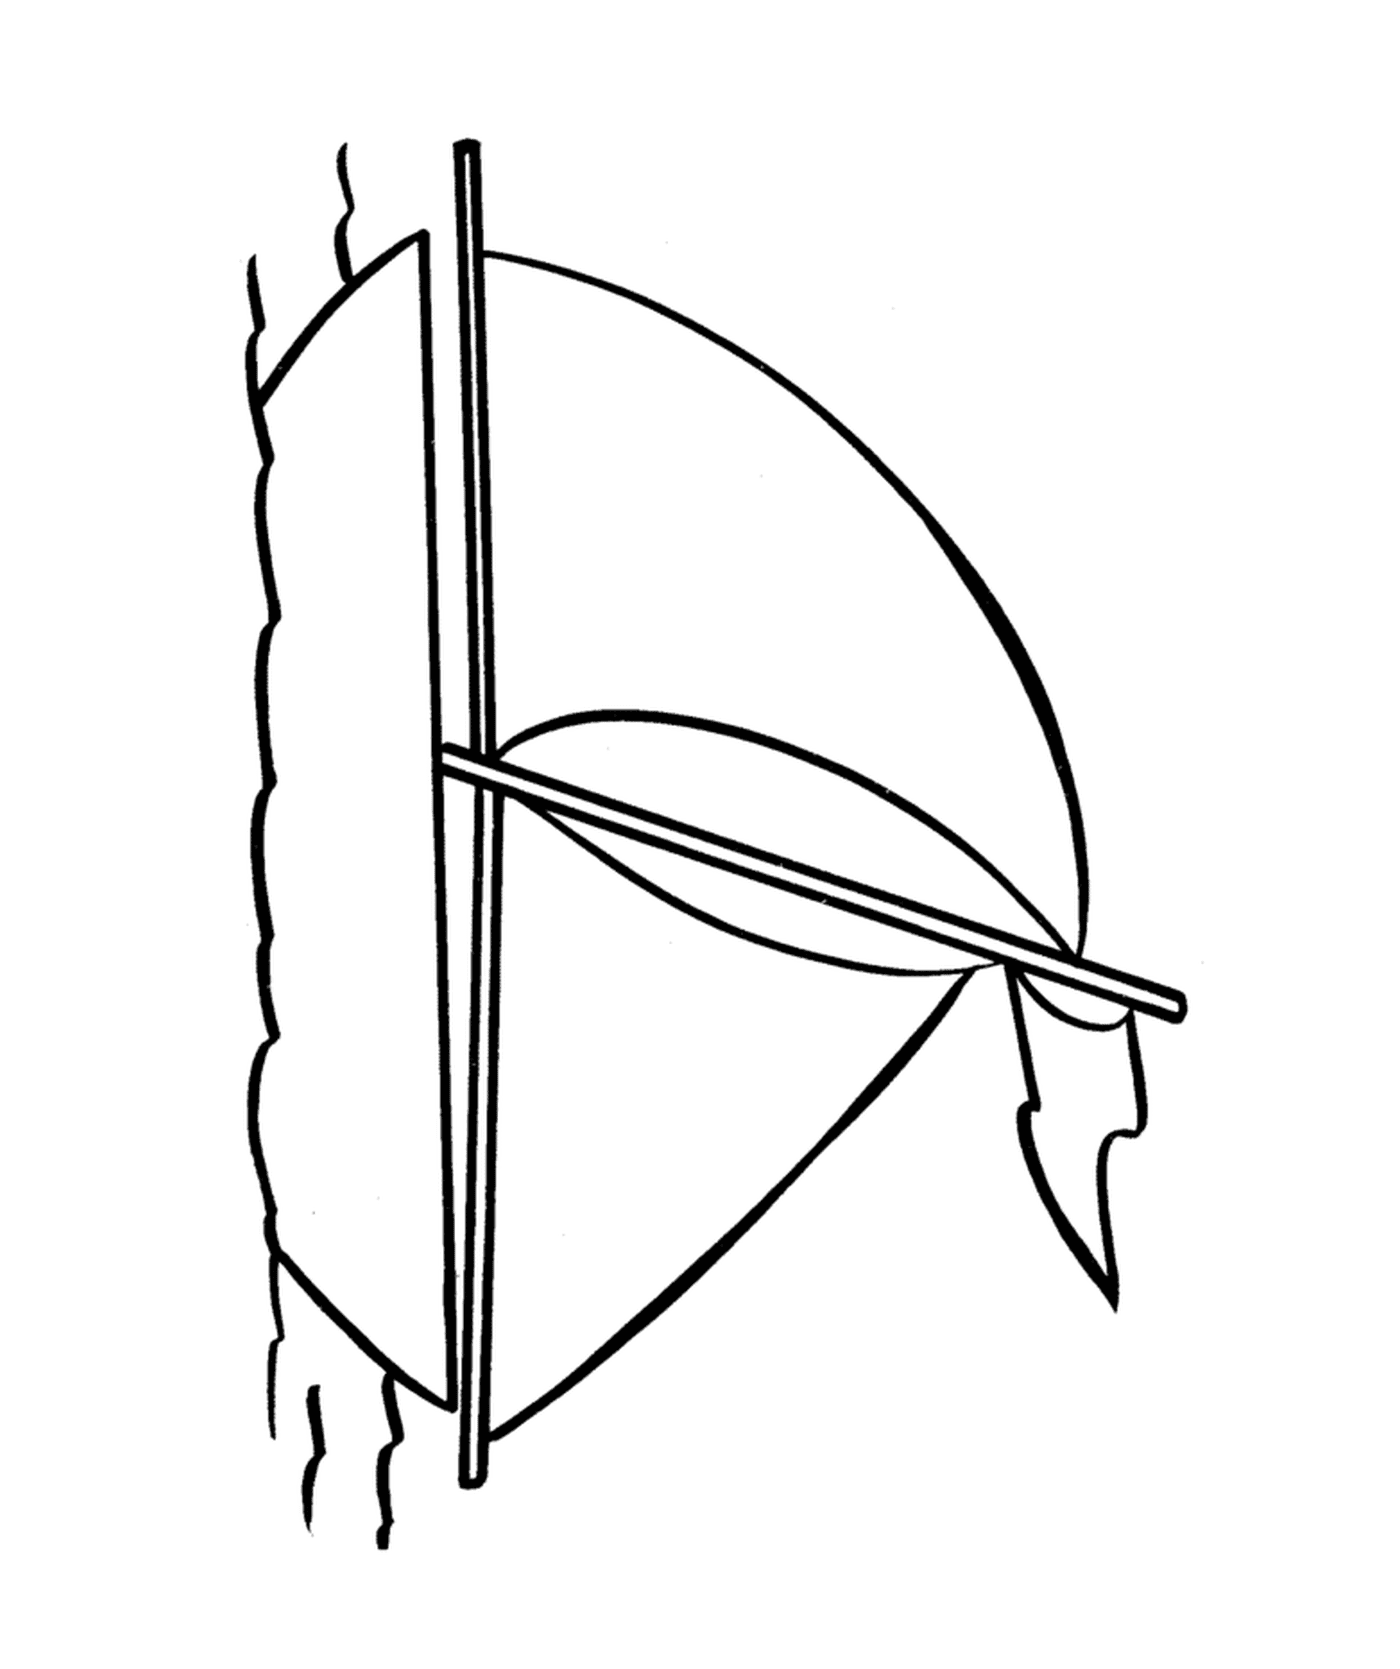  A bow and an arrow 